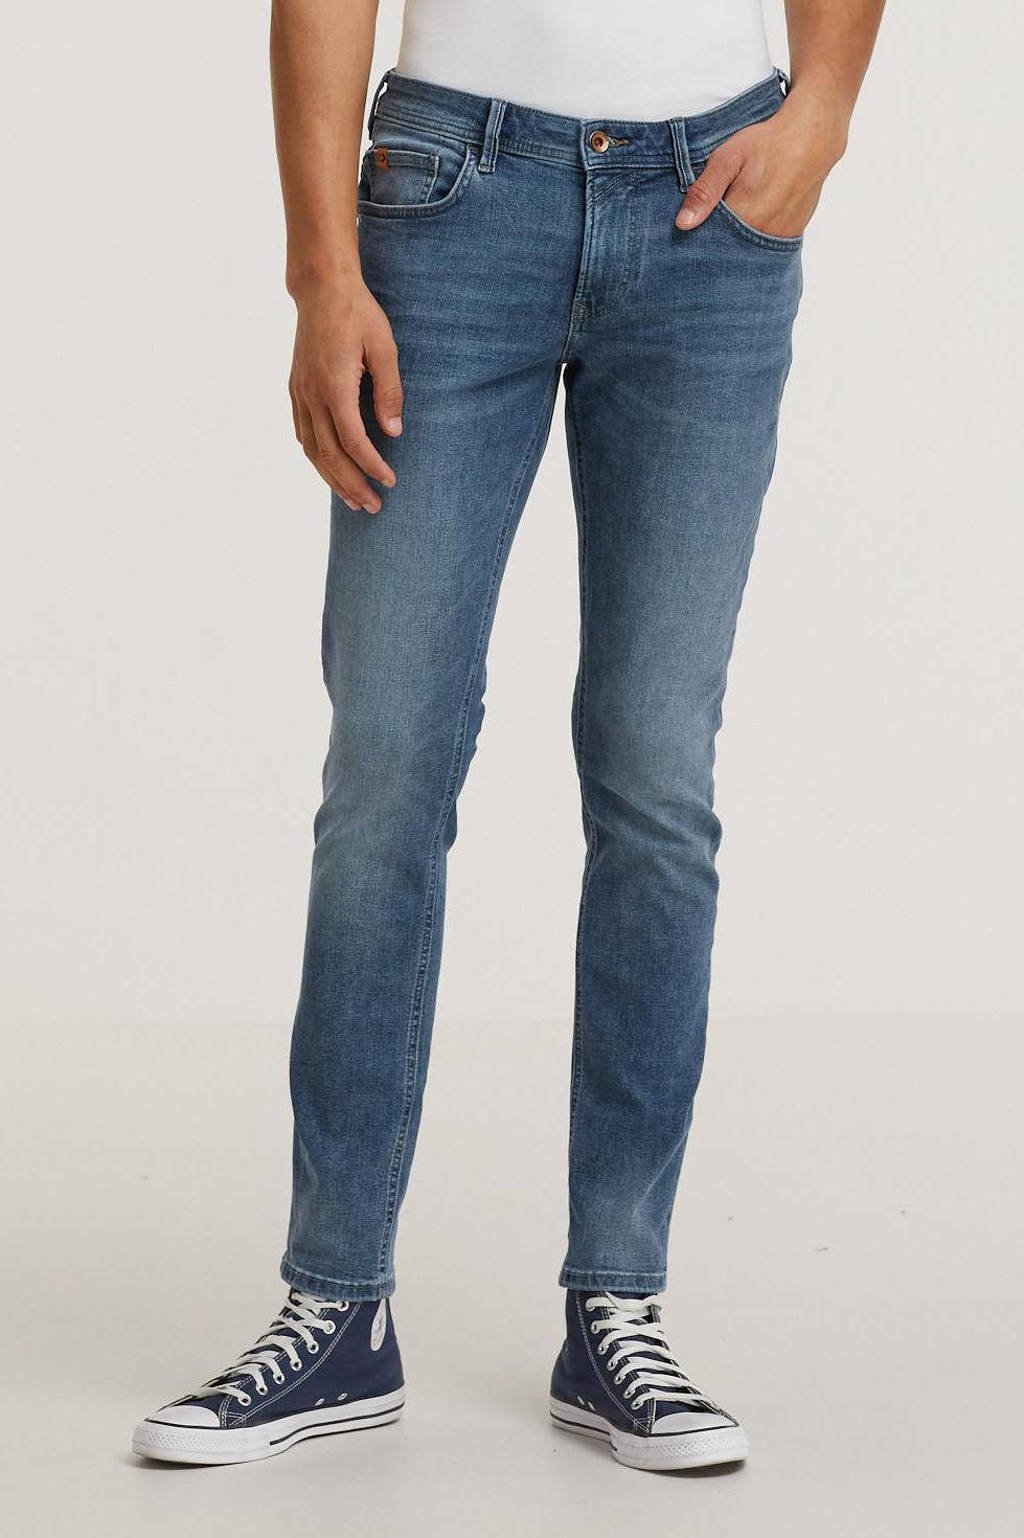 Tom Tailor Denim skinny jeans Culver 10118 used light stone blu, 10118 Used Light Stone Blu